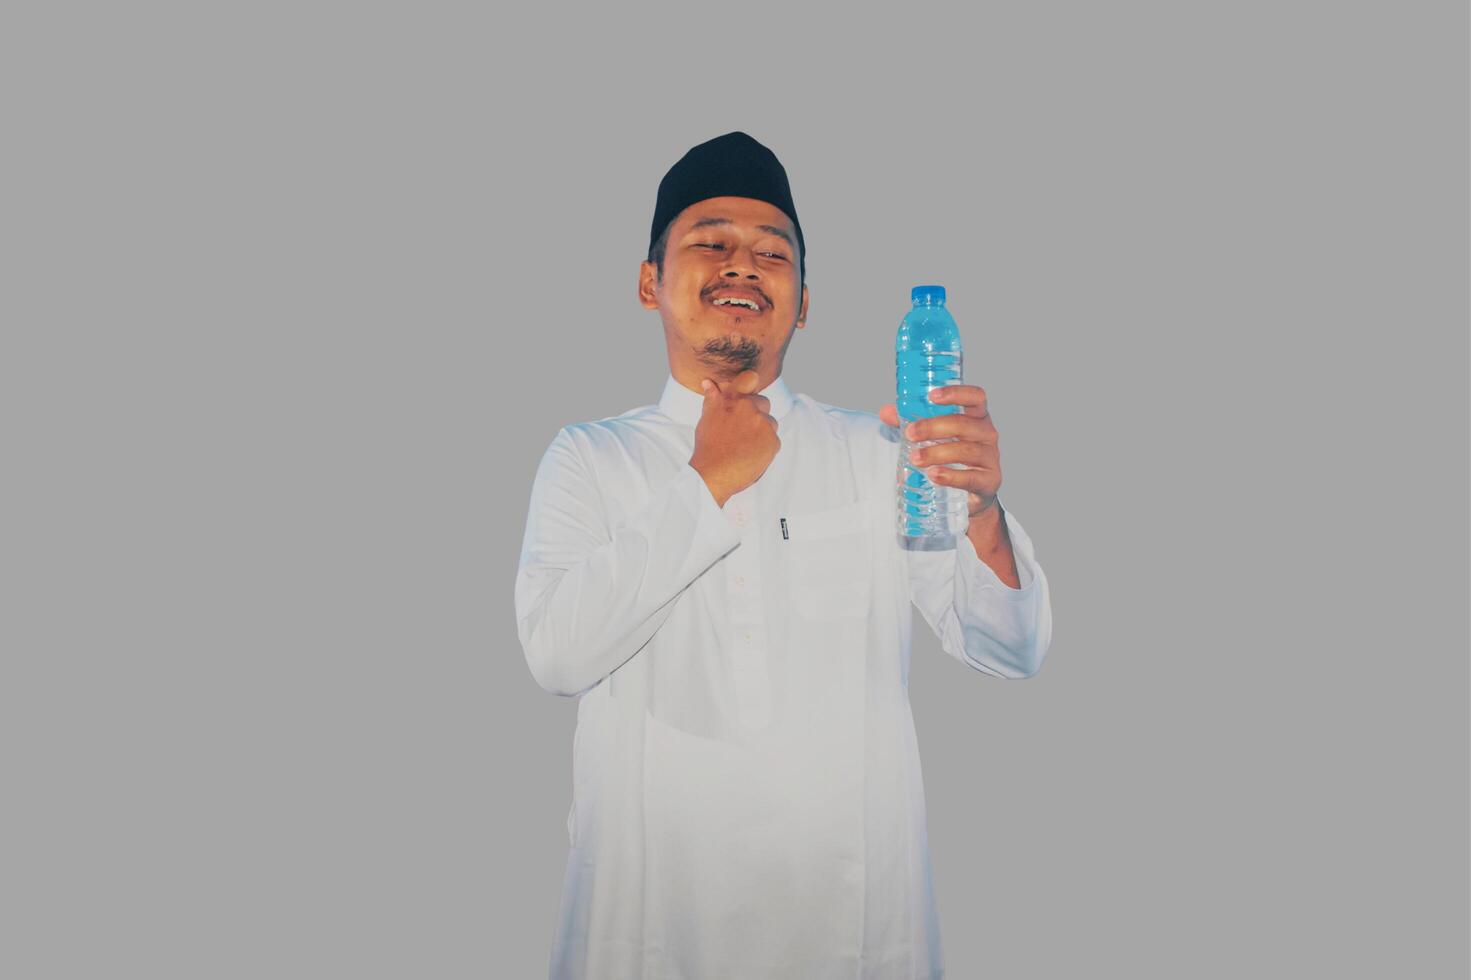 Moslem Mann halten ein trinken und berühren seine Kehle zeigen erleichtert Ausdruck foto